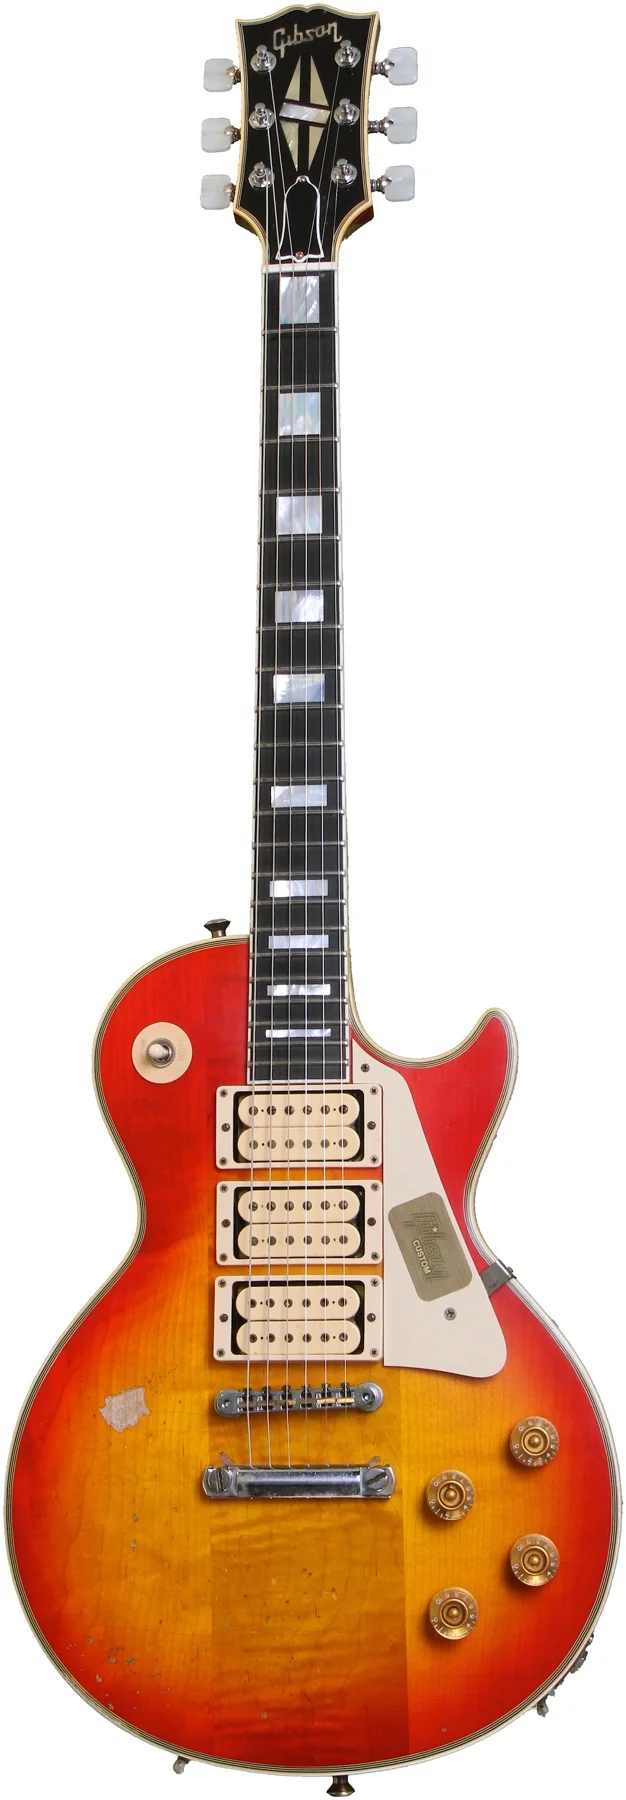 Gibson’s Custom Aged Ace Frehley “Budokan” Les Paul Custom